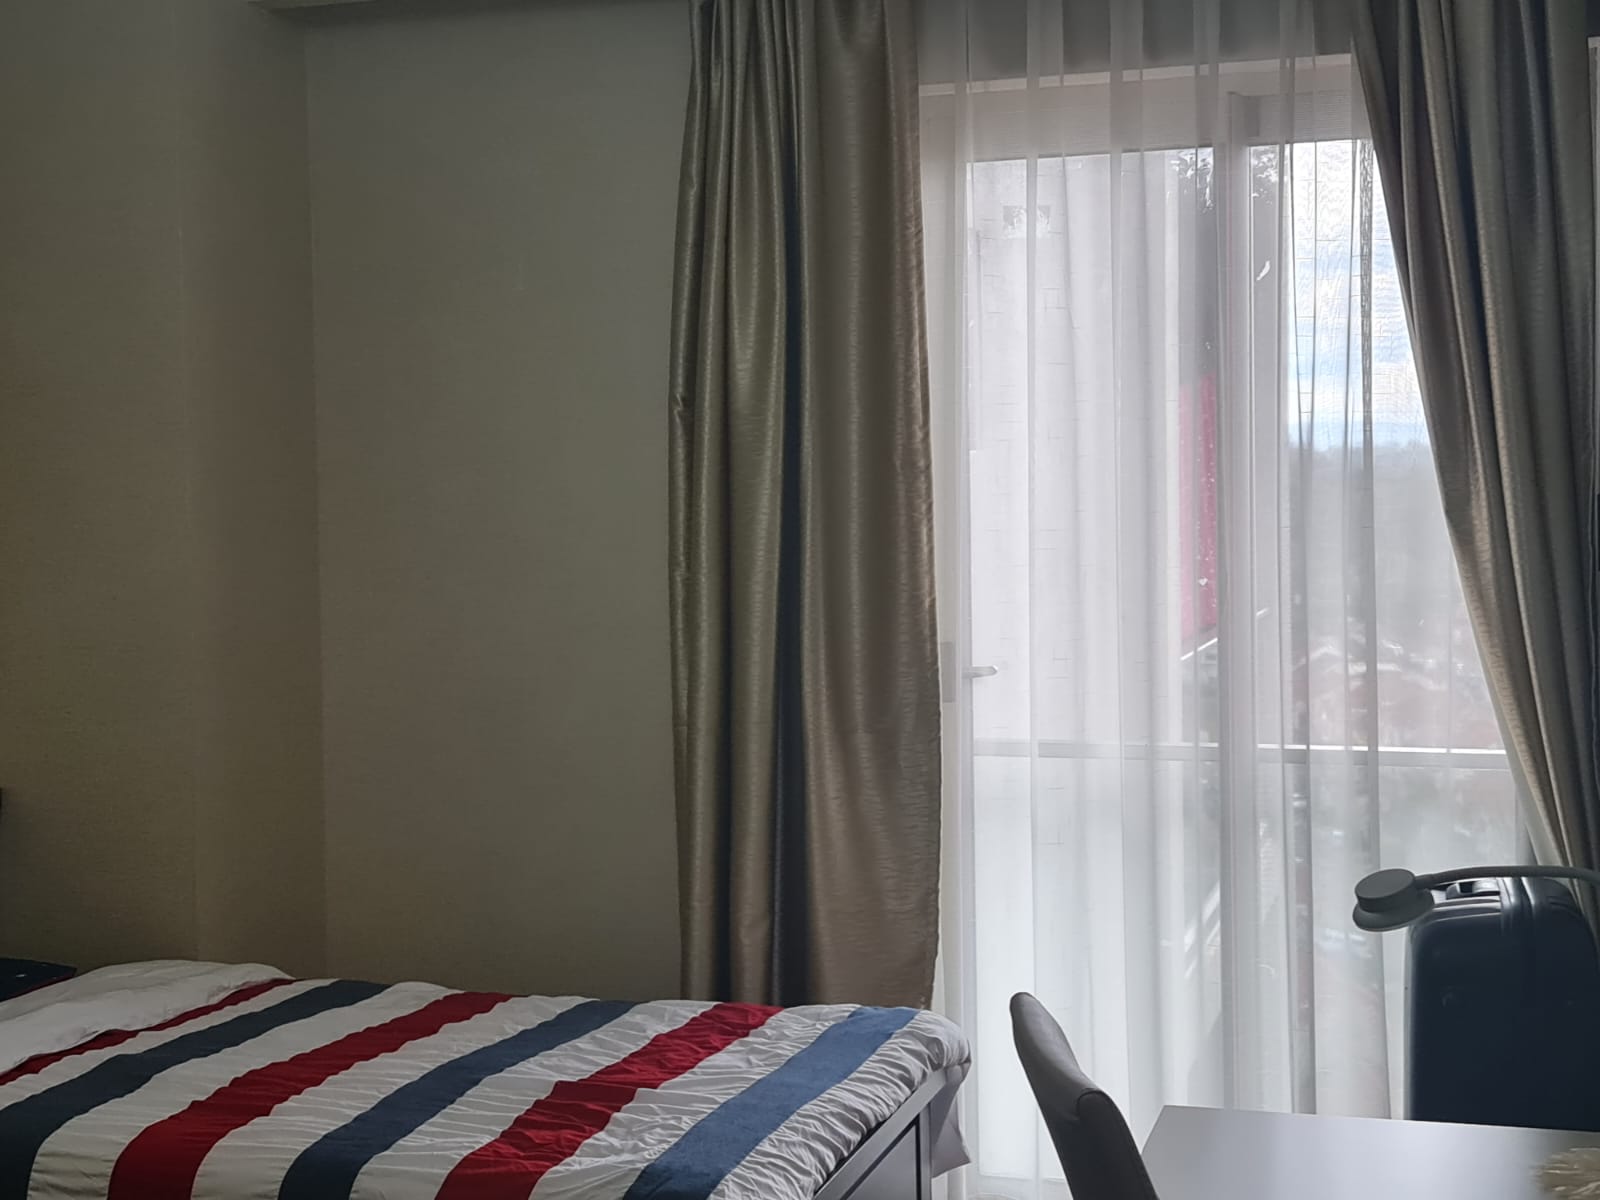 3 Bedroom all en-suite tastefully furnished apartment in kileleshwa to let at Kshs300k (4)